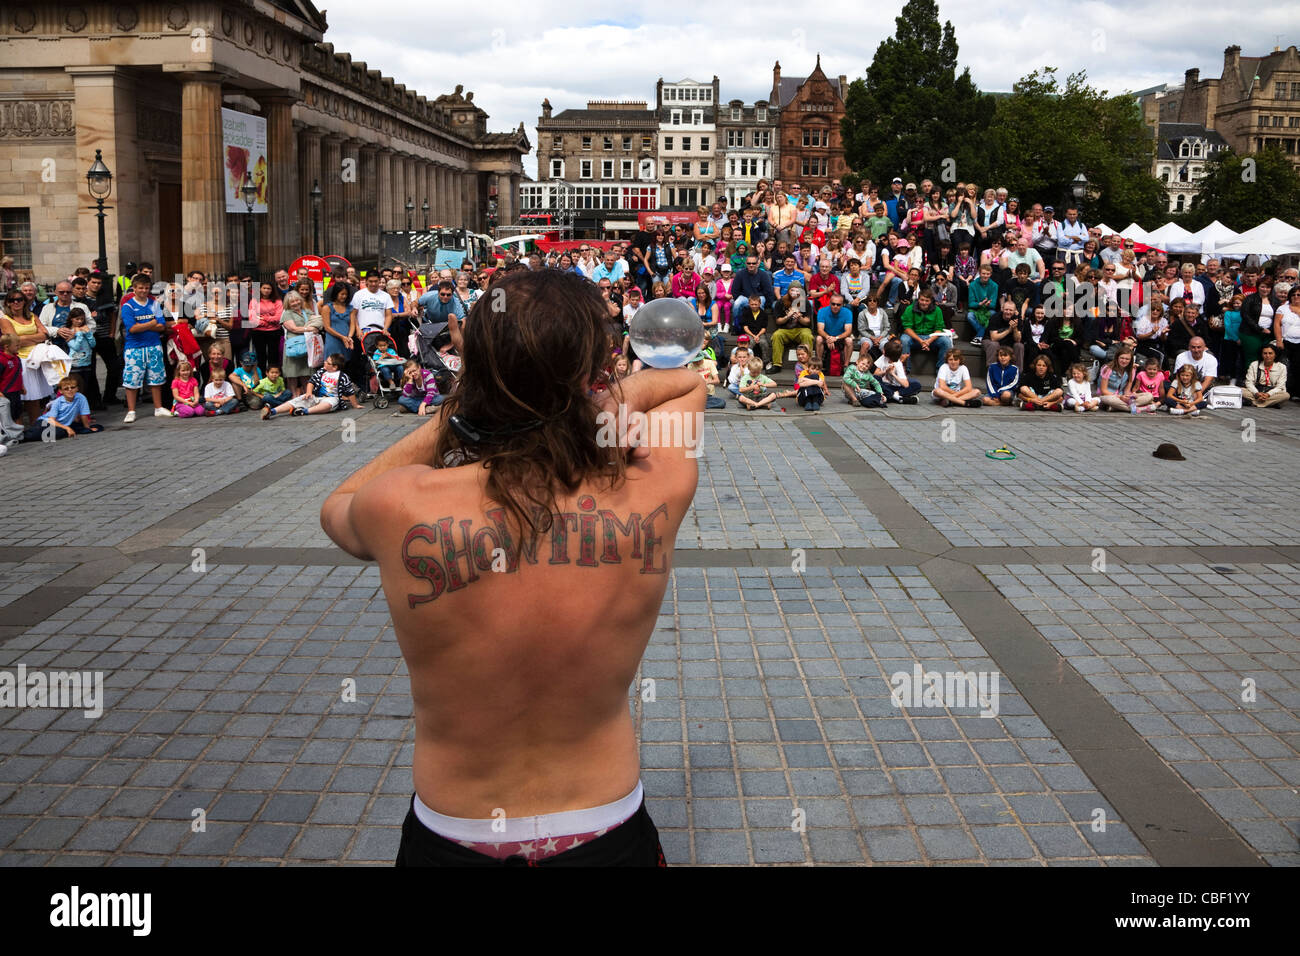 Artiste de rue à l'Edinburgh Fringe Festival avec un tatouage de 'Showtime' sur le dos Banque D'Images